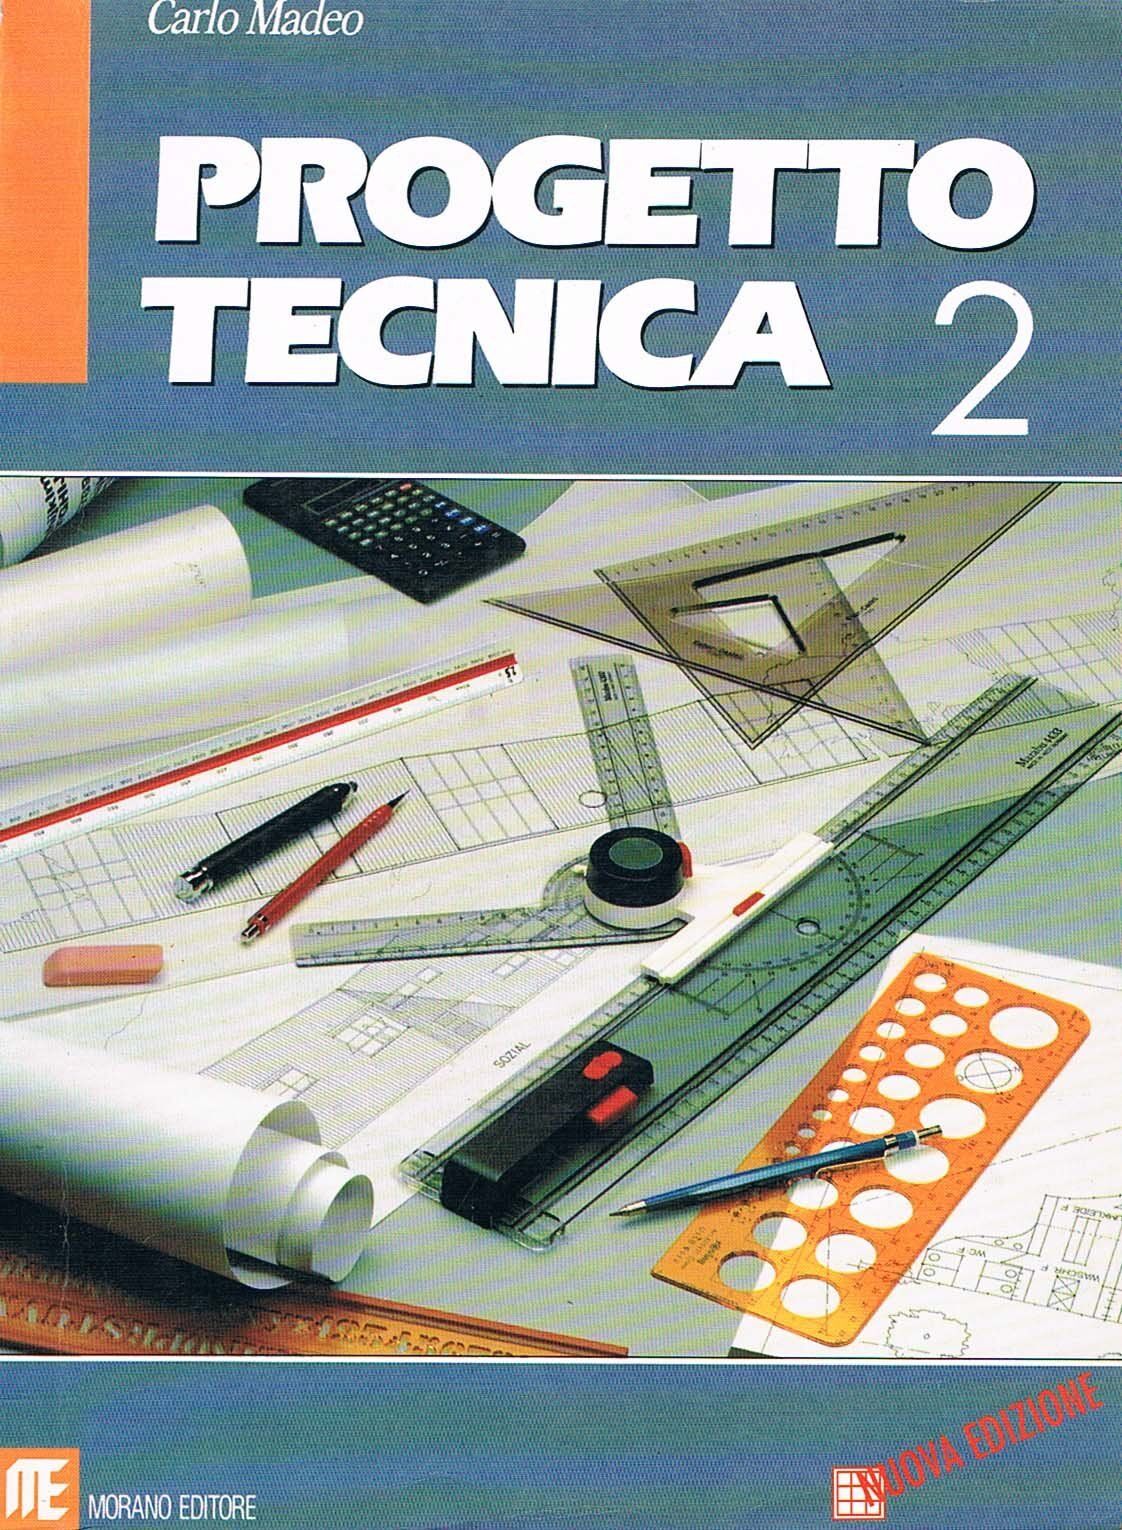 Progetto tecnica 2 - Carlo Madeo,  1998,  Morano Editore